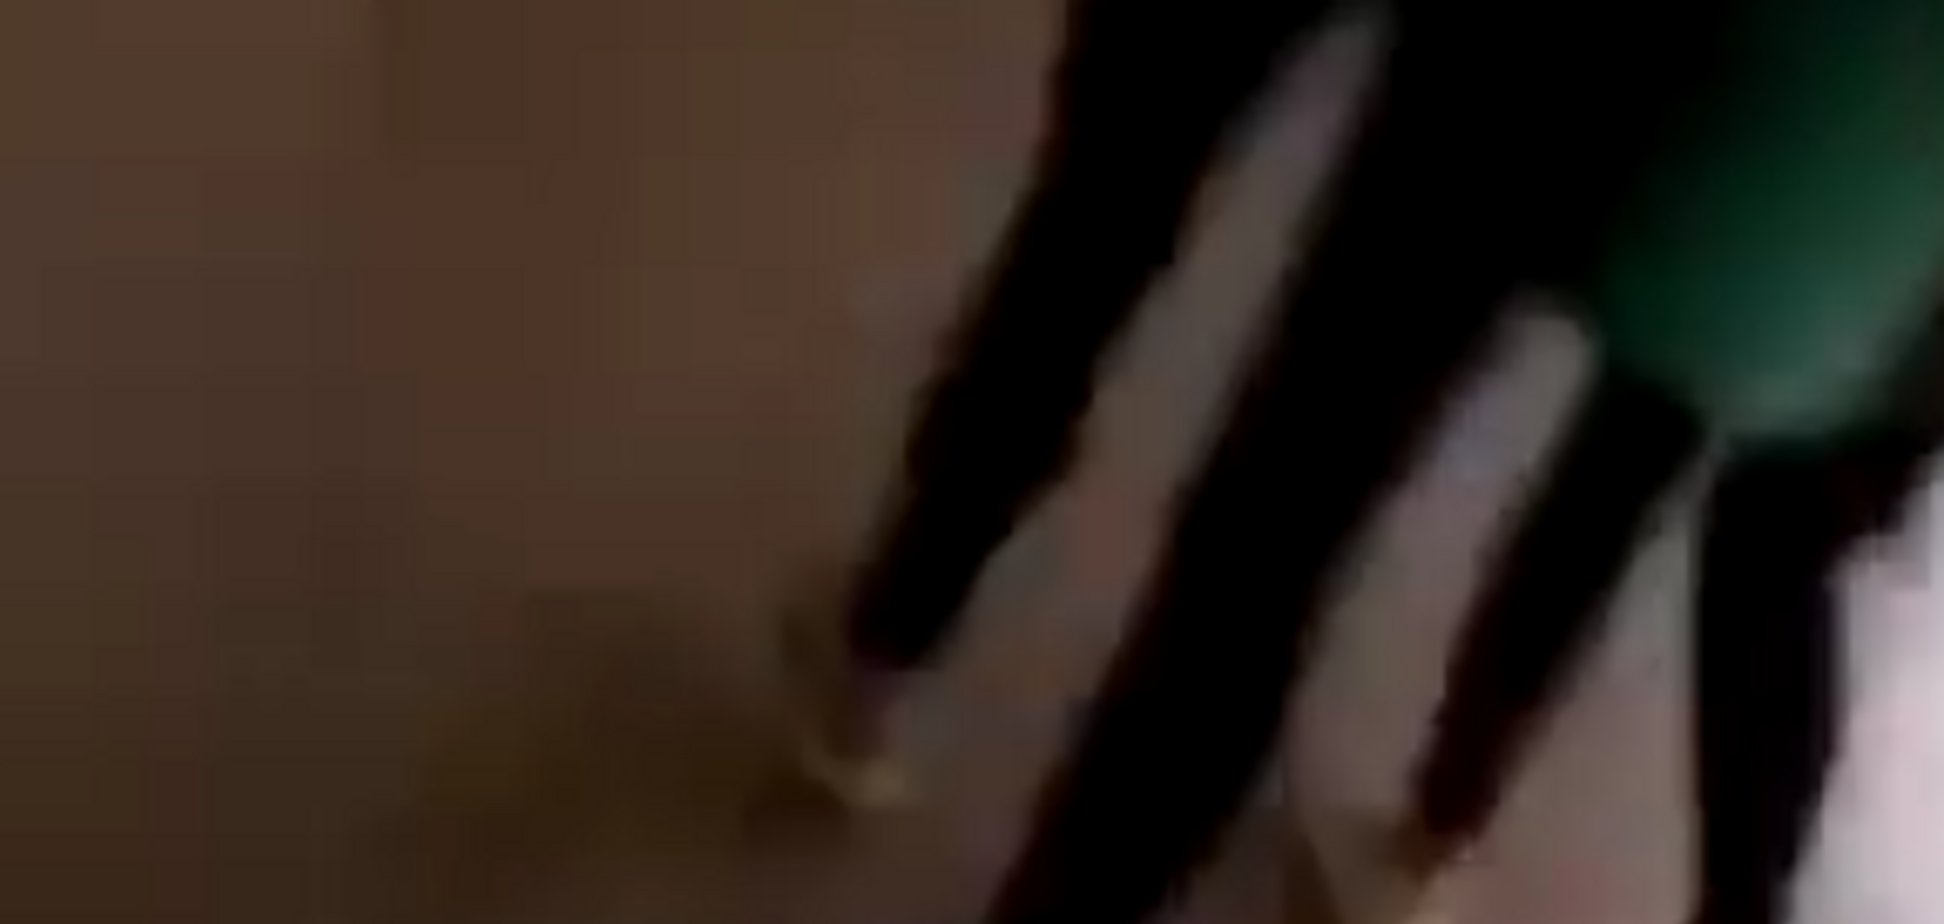 Тела на лестницах: появились видео из здания колледжа во время бойни в Керчи